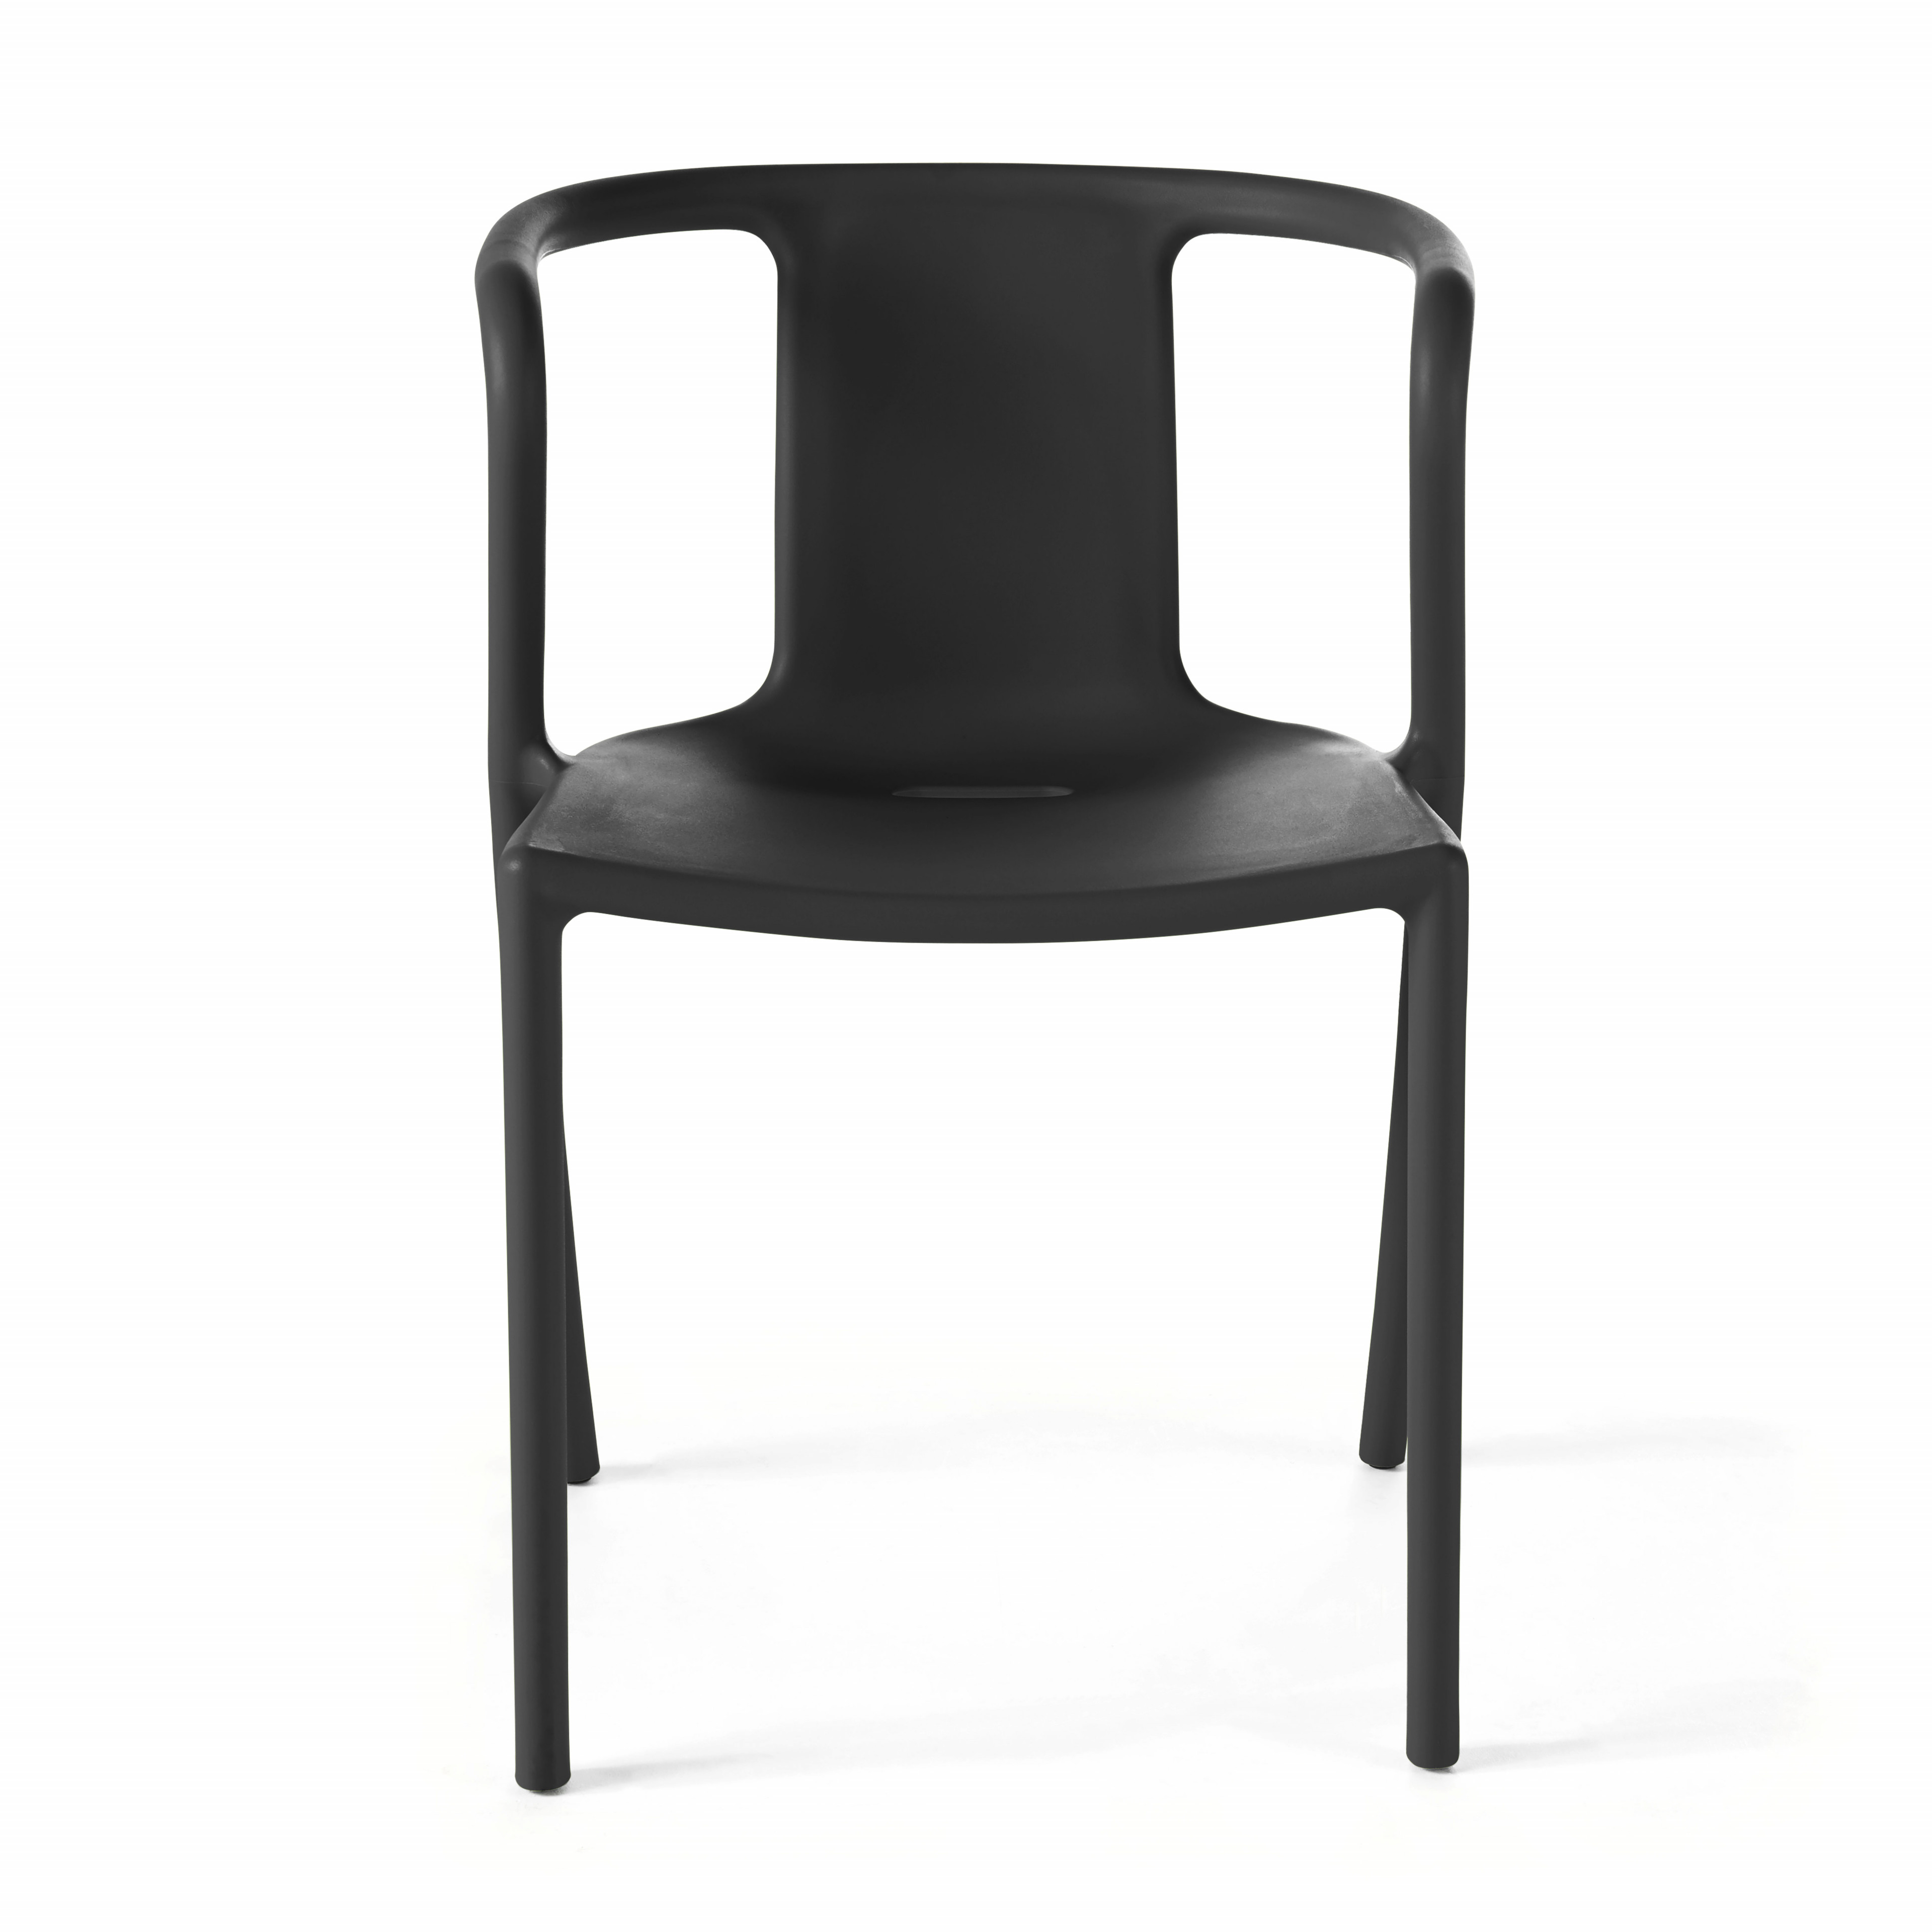 Chaise design avec accoudoirs, empilable, plastique, Fauteuil Air